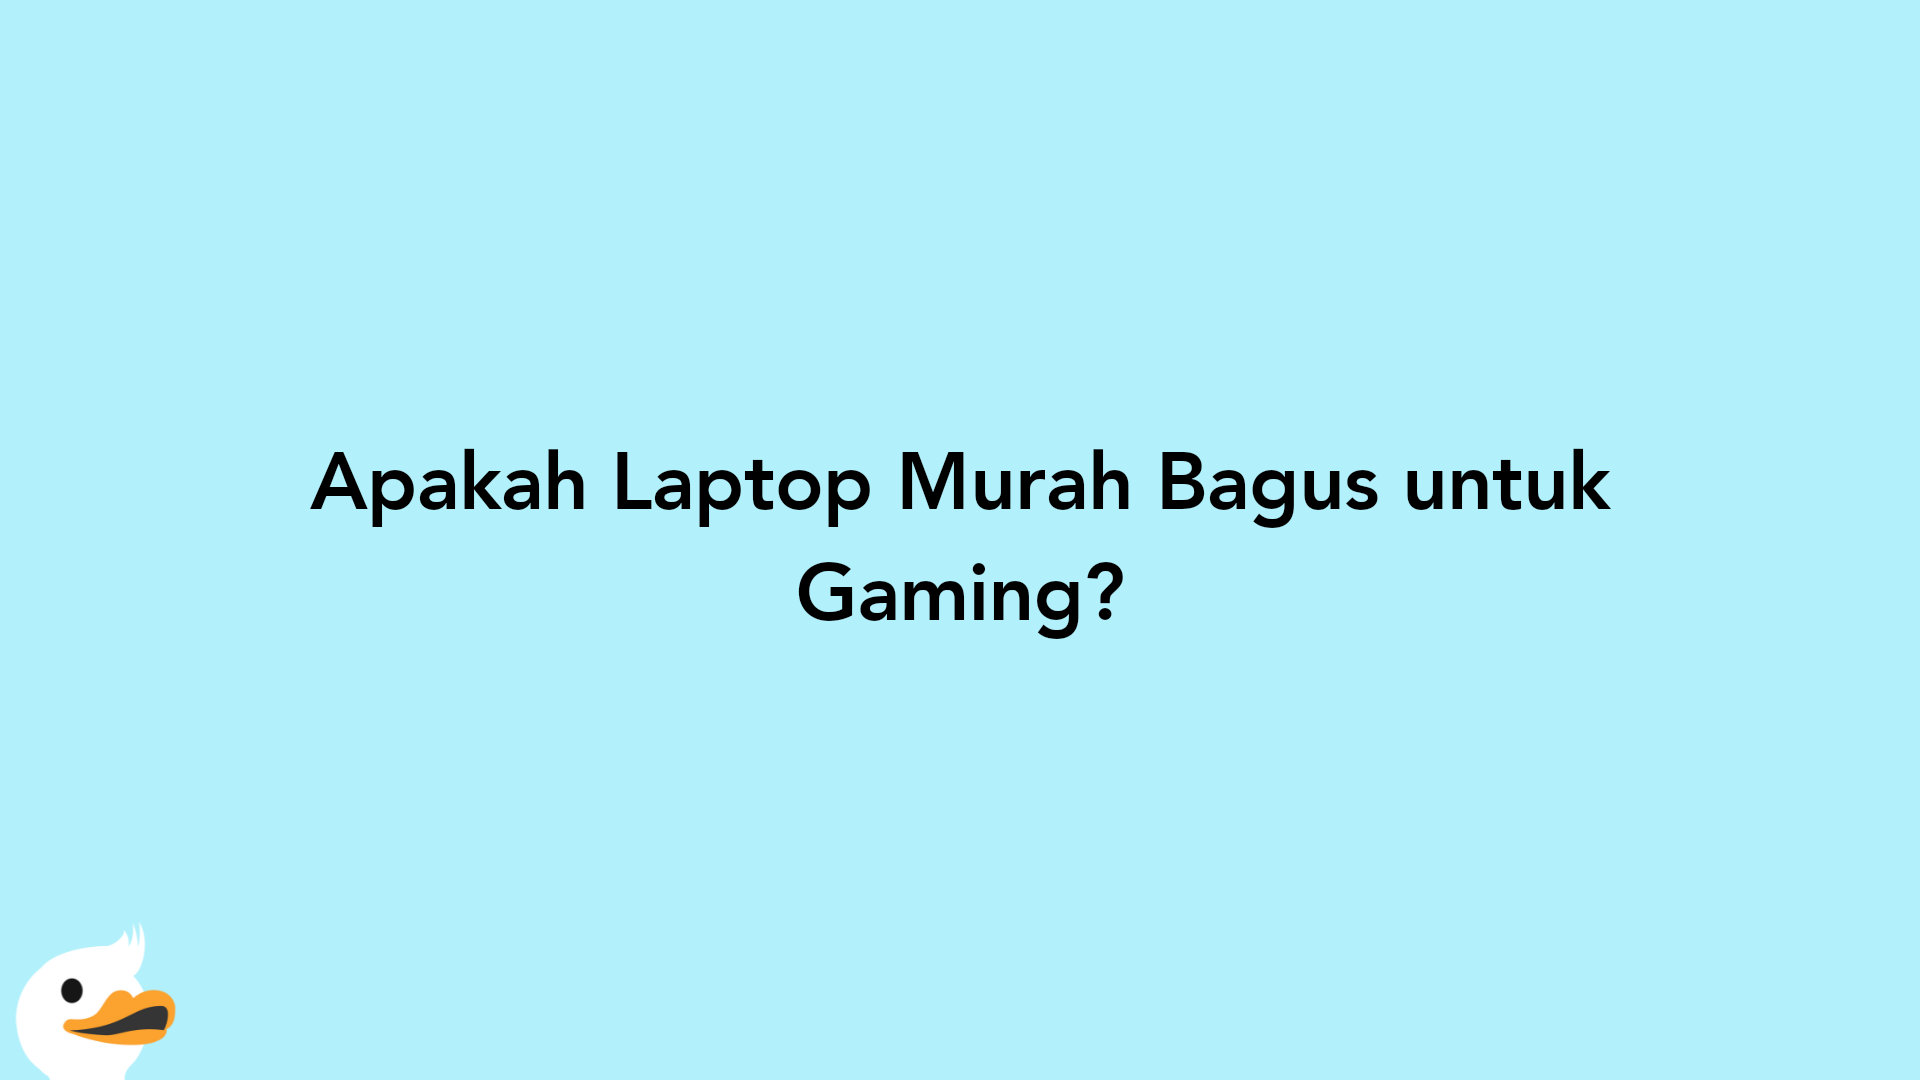 Apakah Laptop Murah Bagus untuk Gaming?